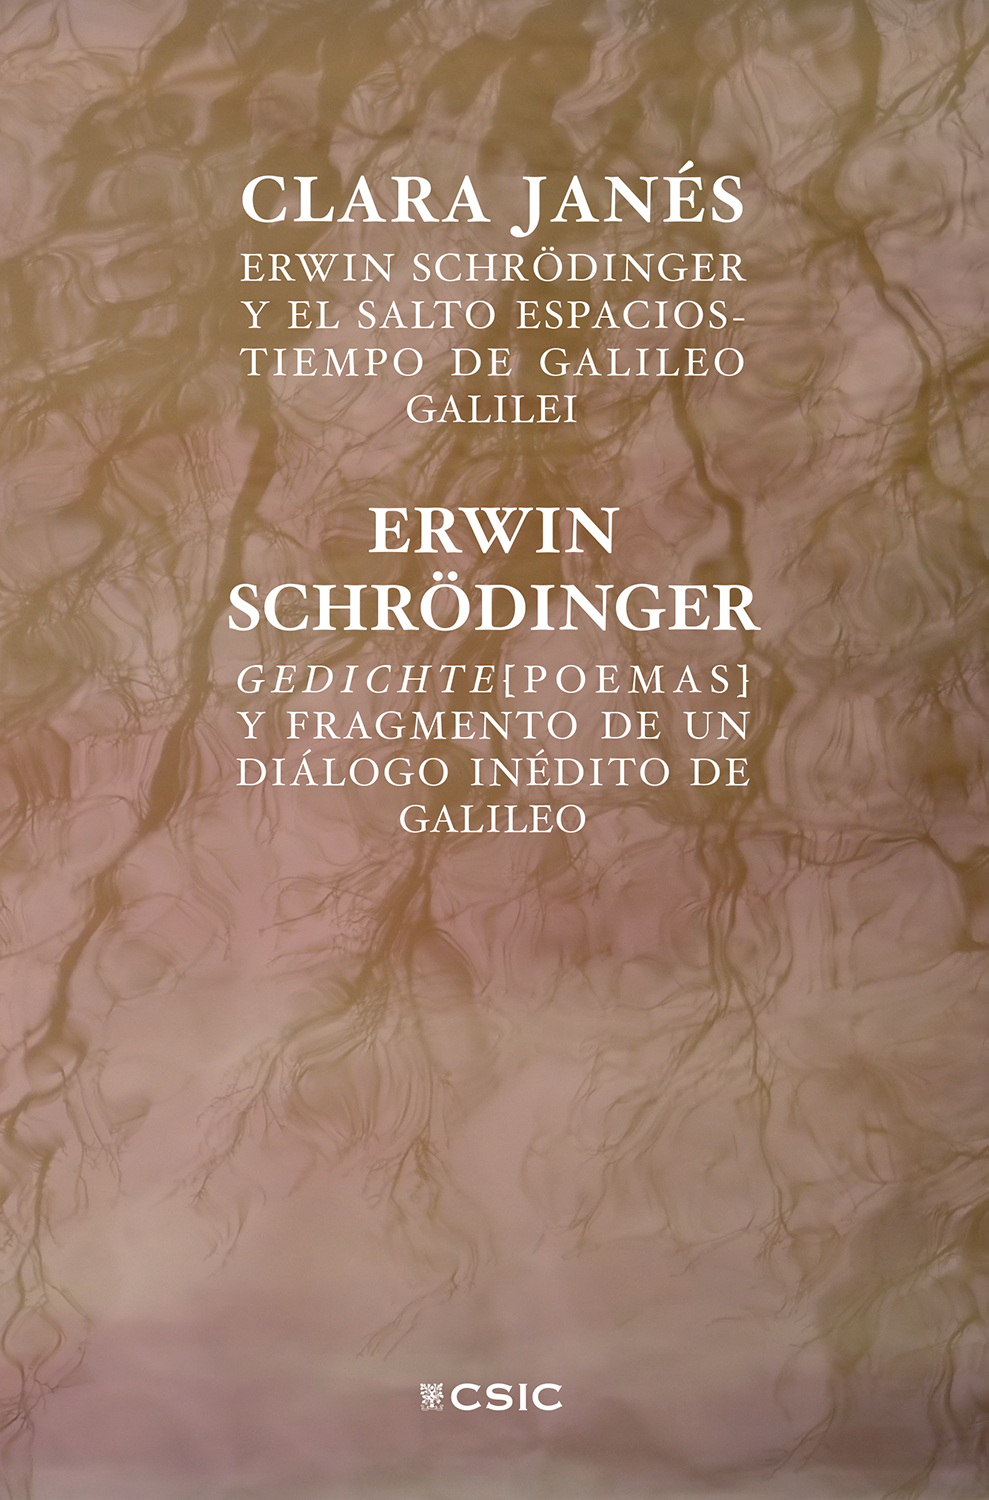 Erwin Schrödinger y el salto espacios-tiempo de Galileo Galilei / Clara Janés; Gedichte (poemas) y Fragmento de un diálogo inédito de Galileo / Erwin Schrödinger. 9788400111113